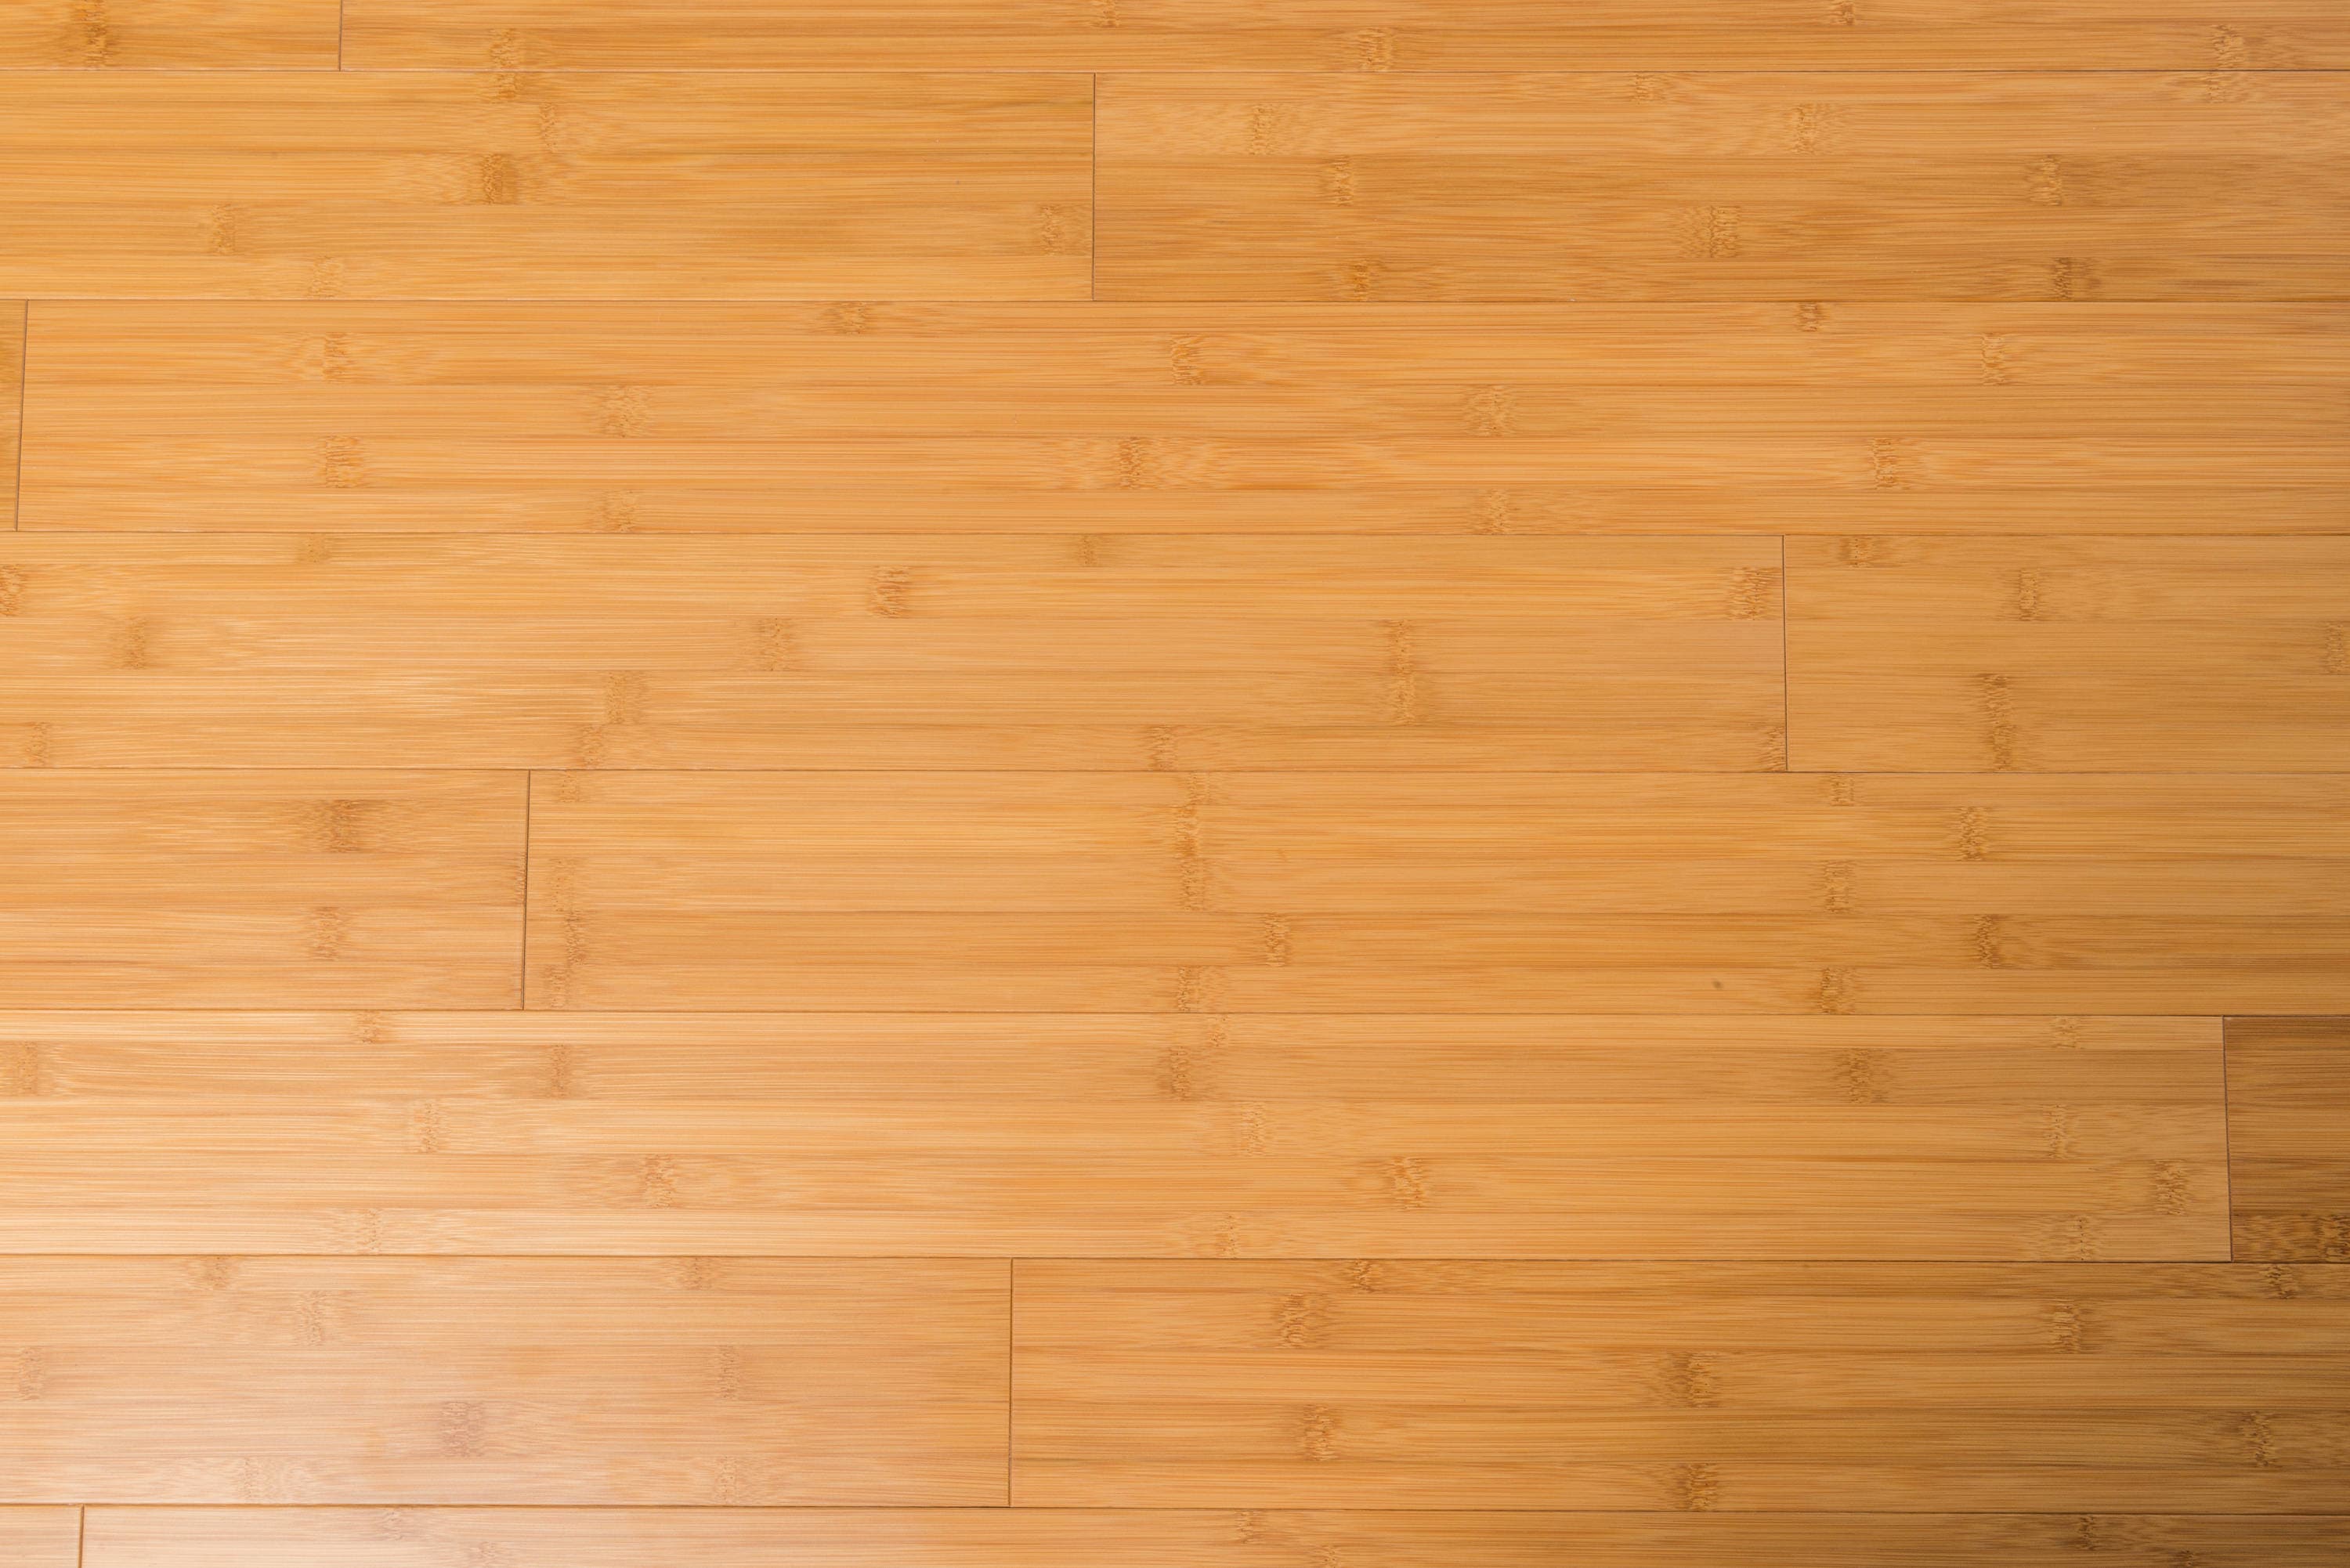 The 5 Best 100% Felt Pads For Bamboo Hardwood Floors